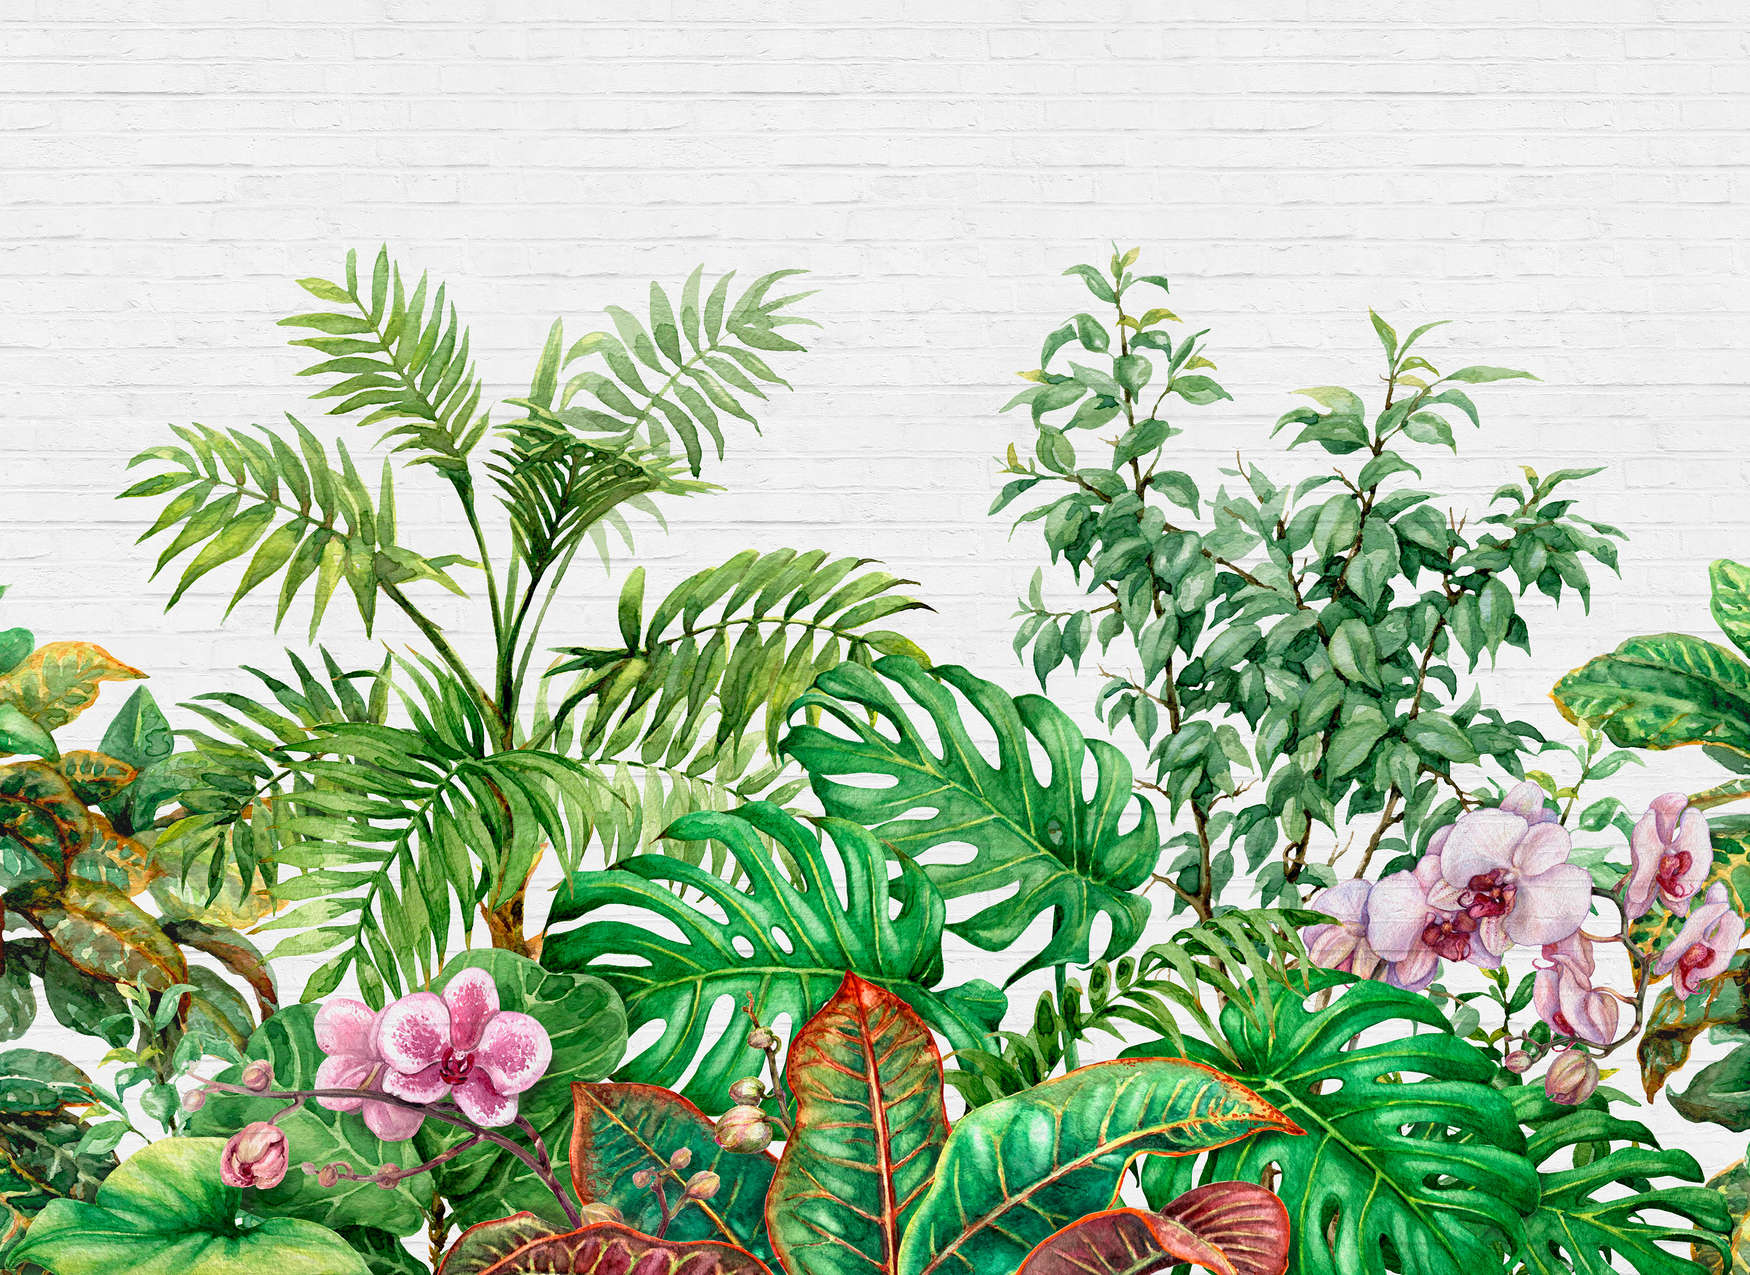             Motif de mur avec feuilles de jungle - vert, blanc, rose
        